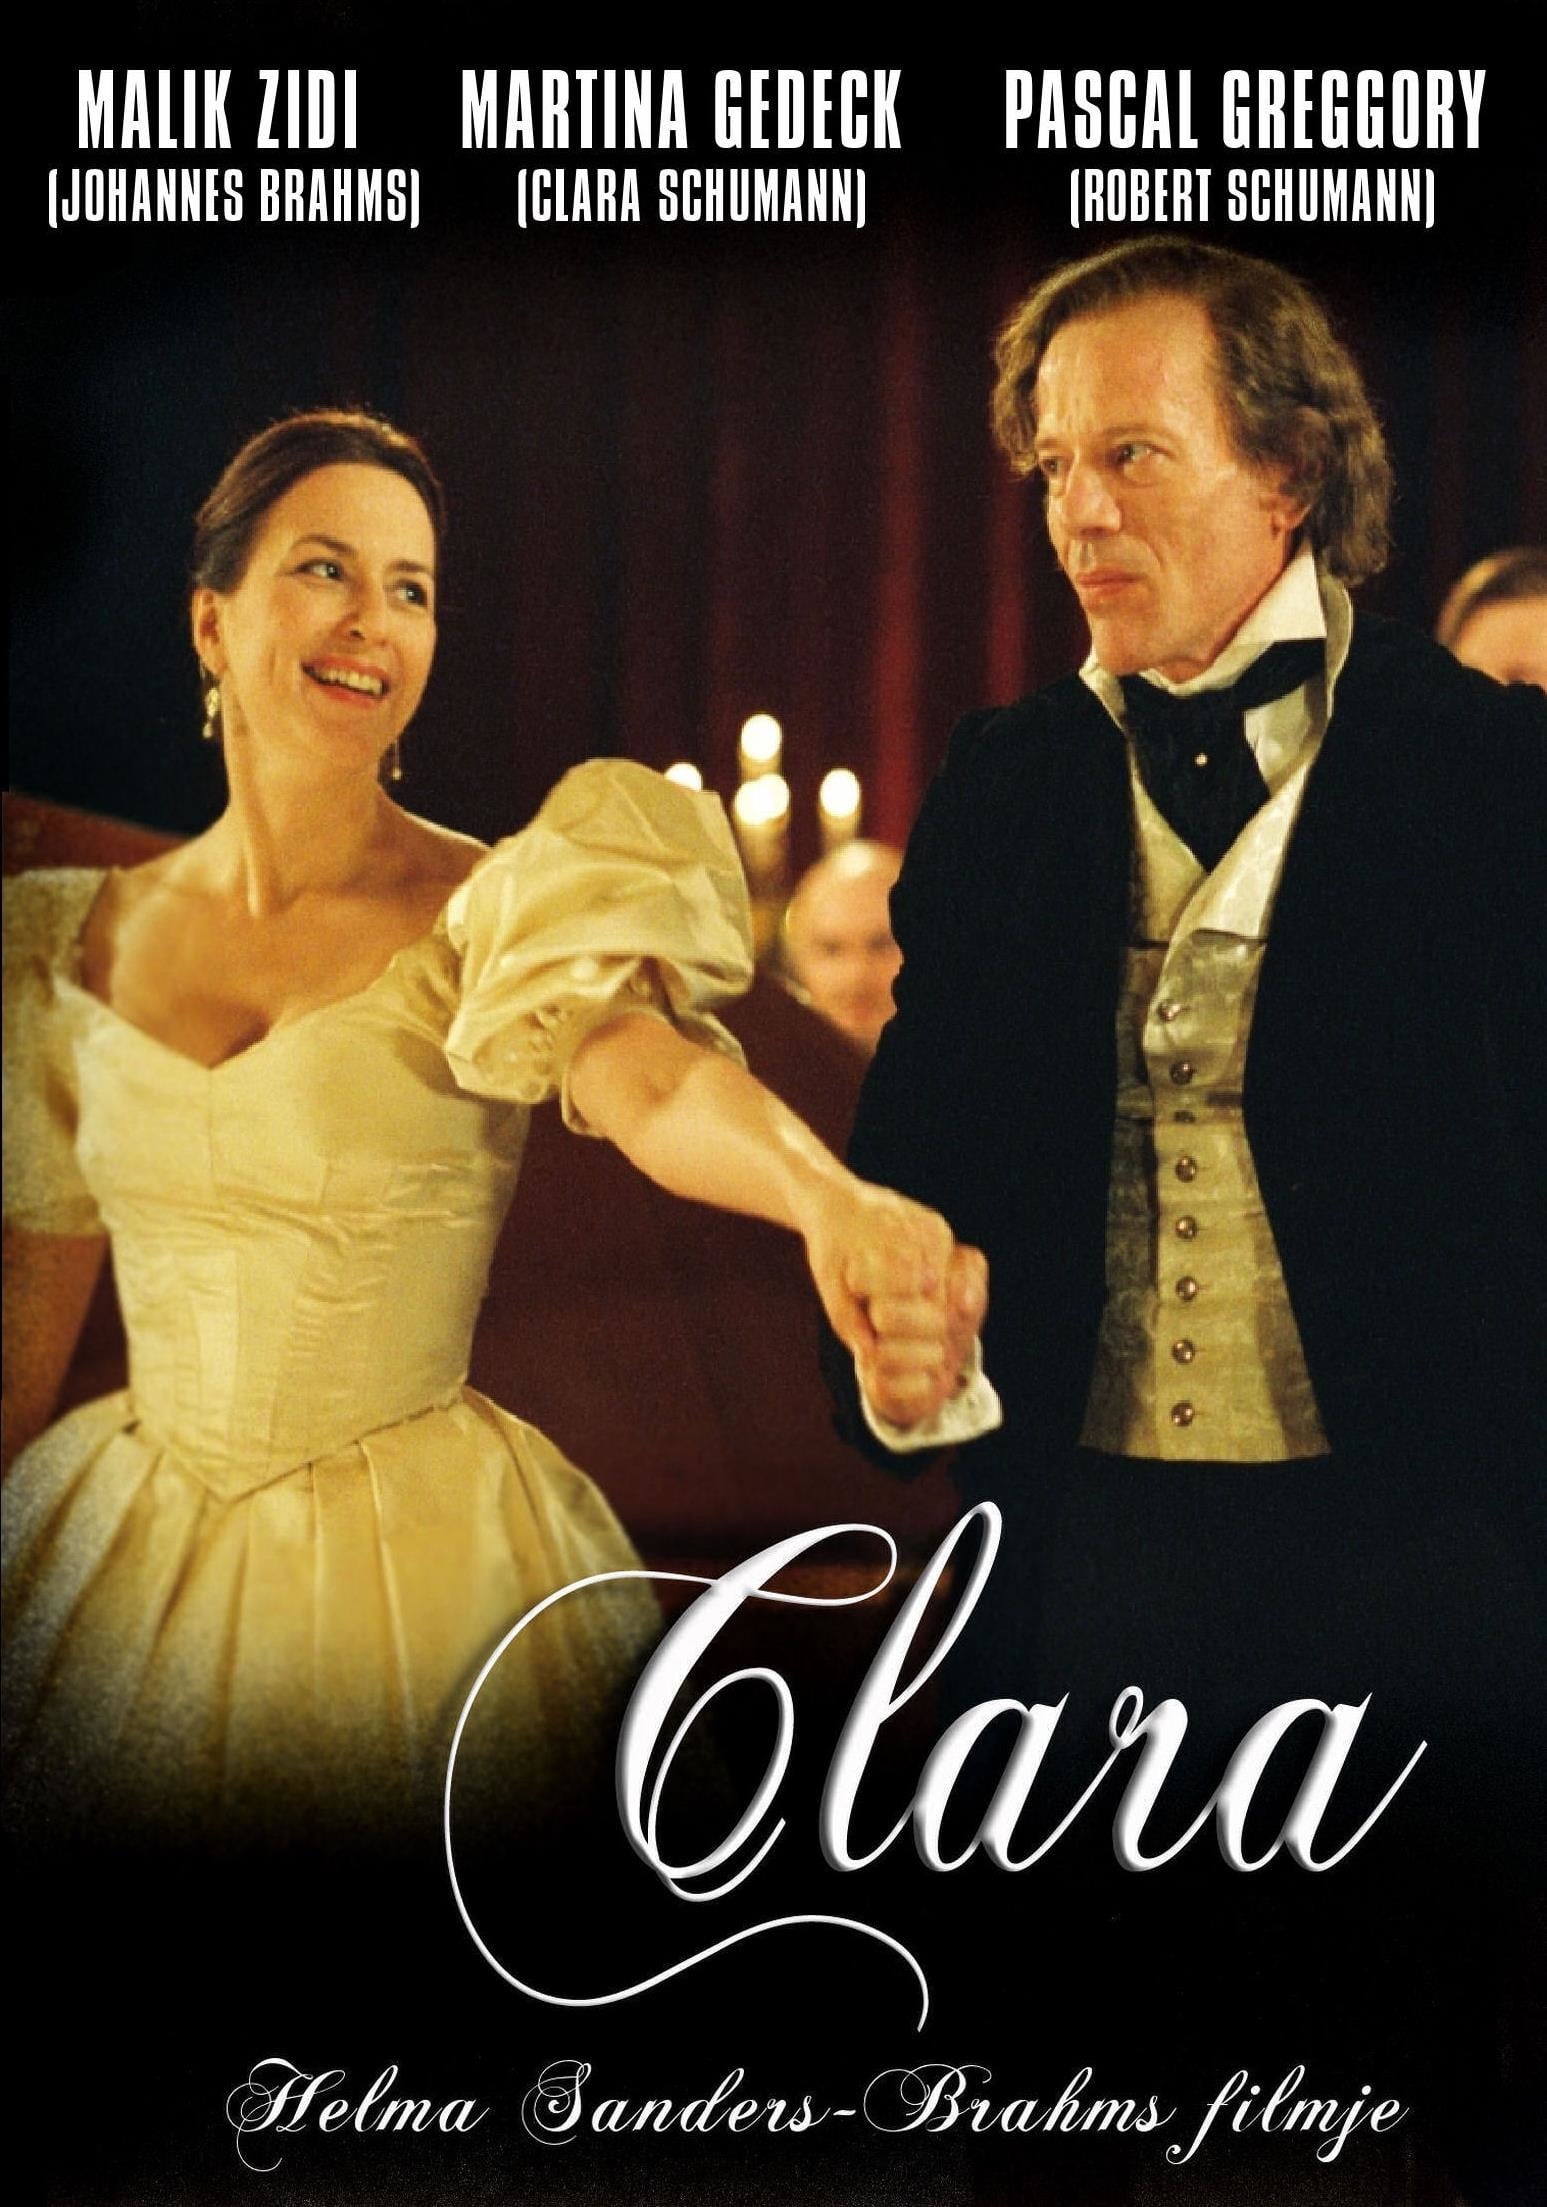 Plakat von "Geliebte Clara"